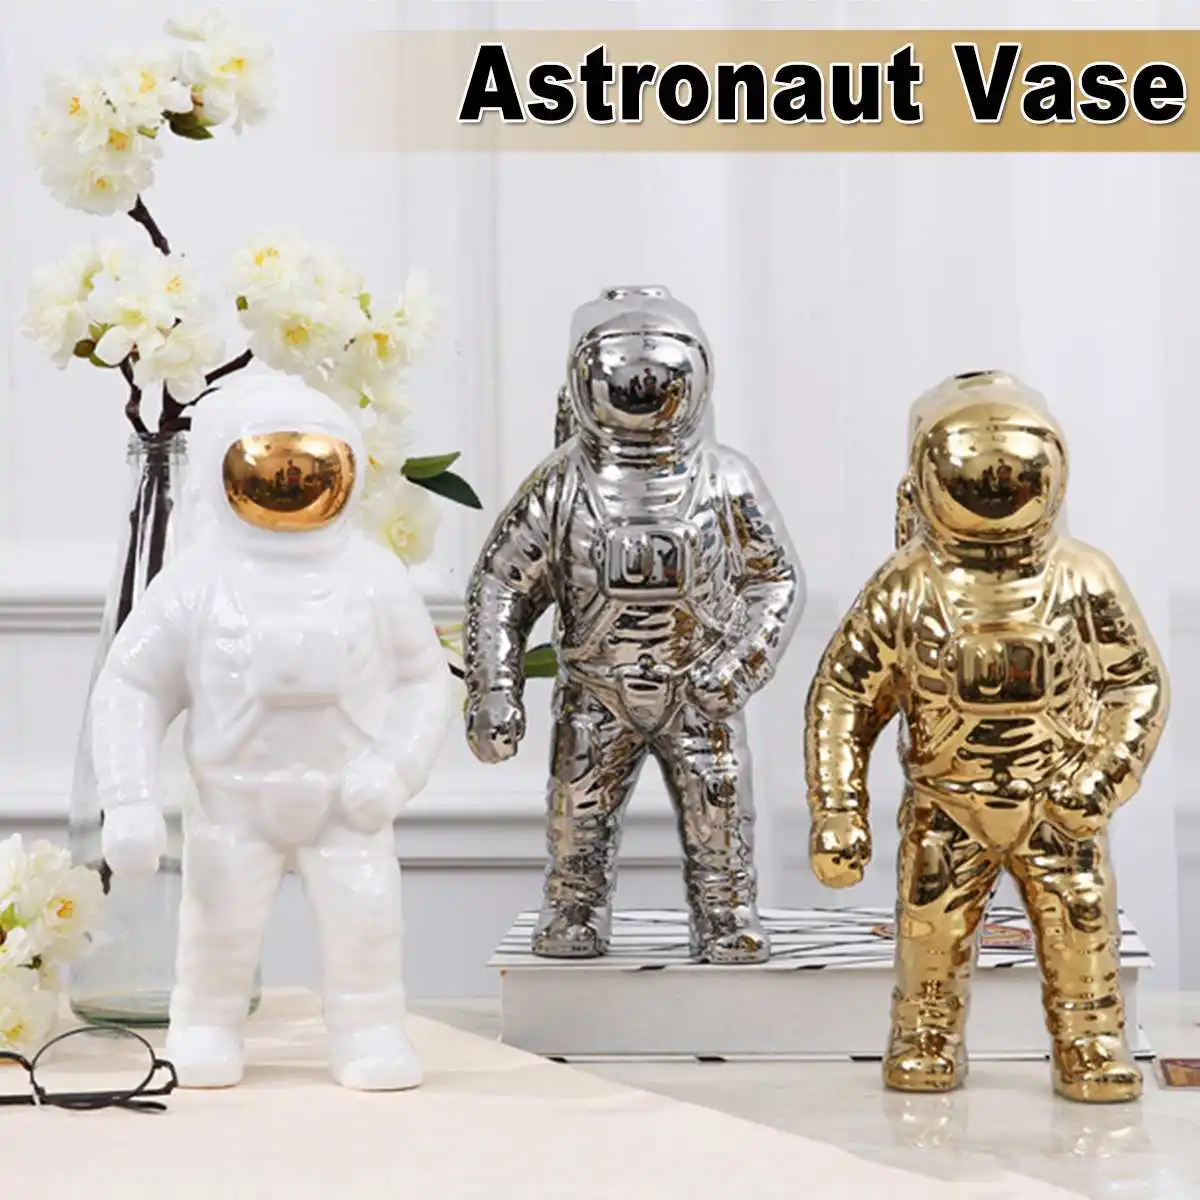 

Space Man Sculpture Astronaut Fashion Vase Rocket Aircraft Ornament Model Ceramic Material Cosmonaut Statue Shuttle Desk Decor